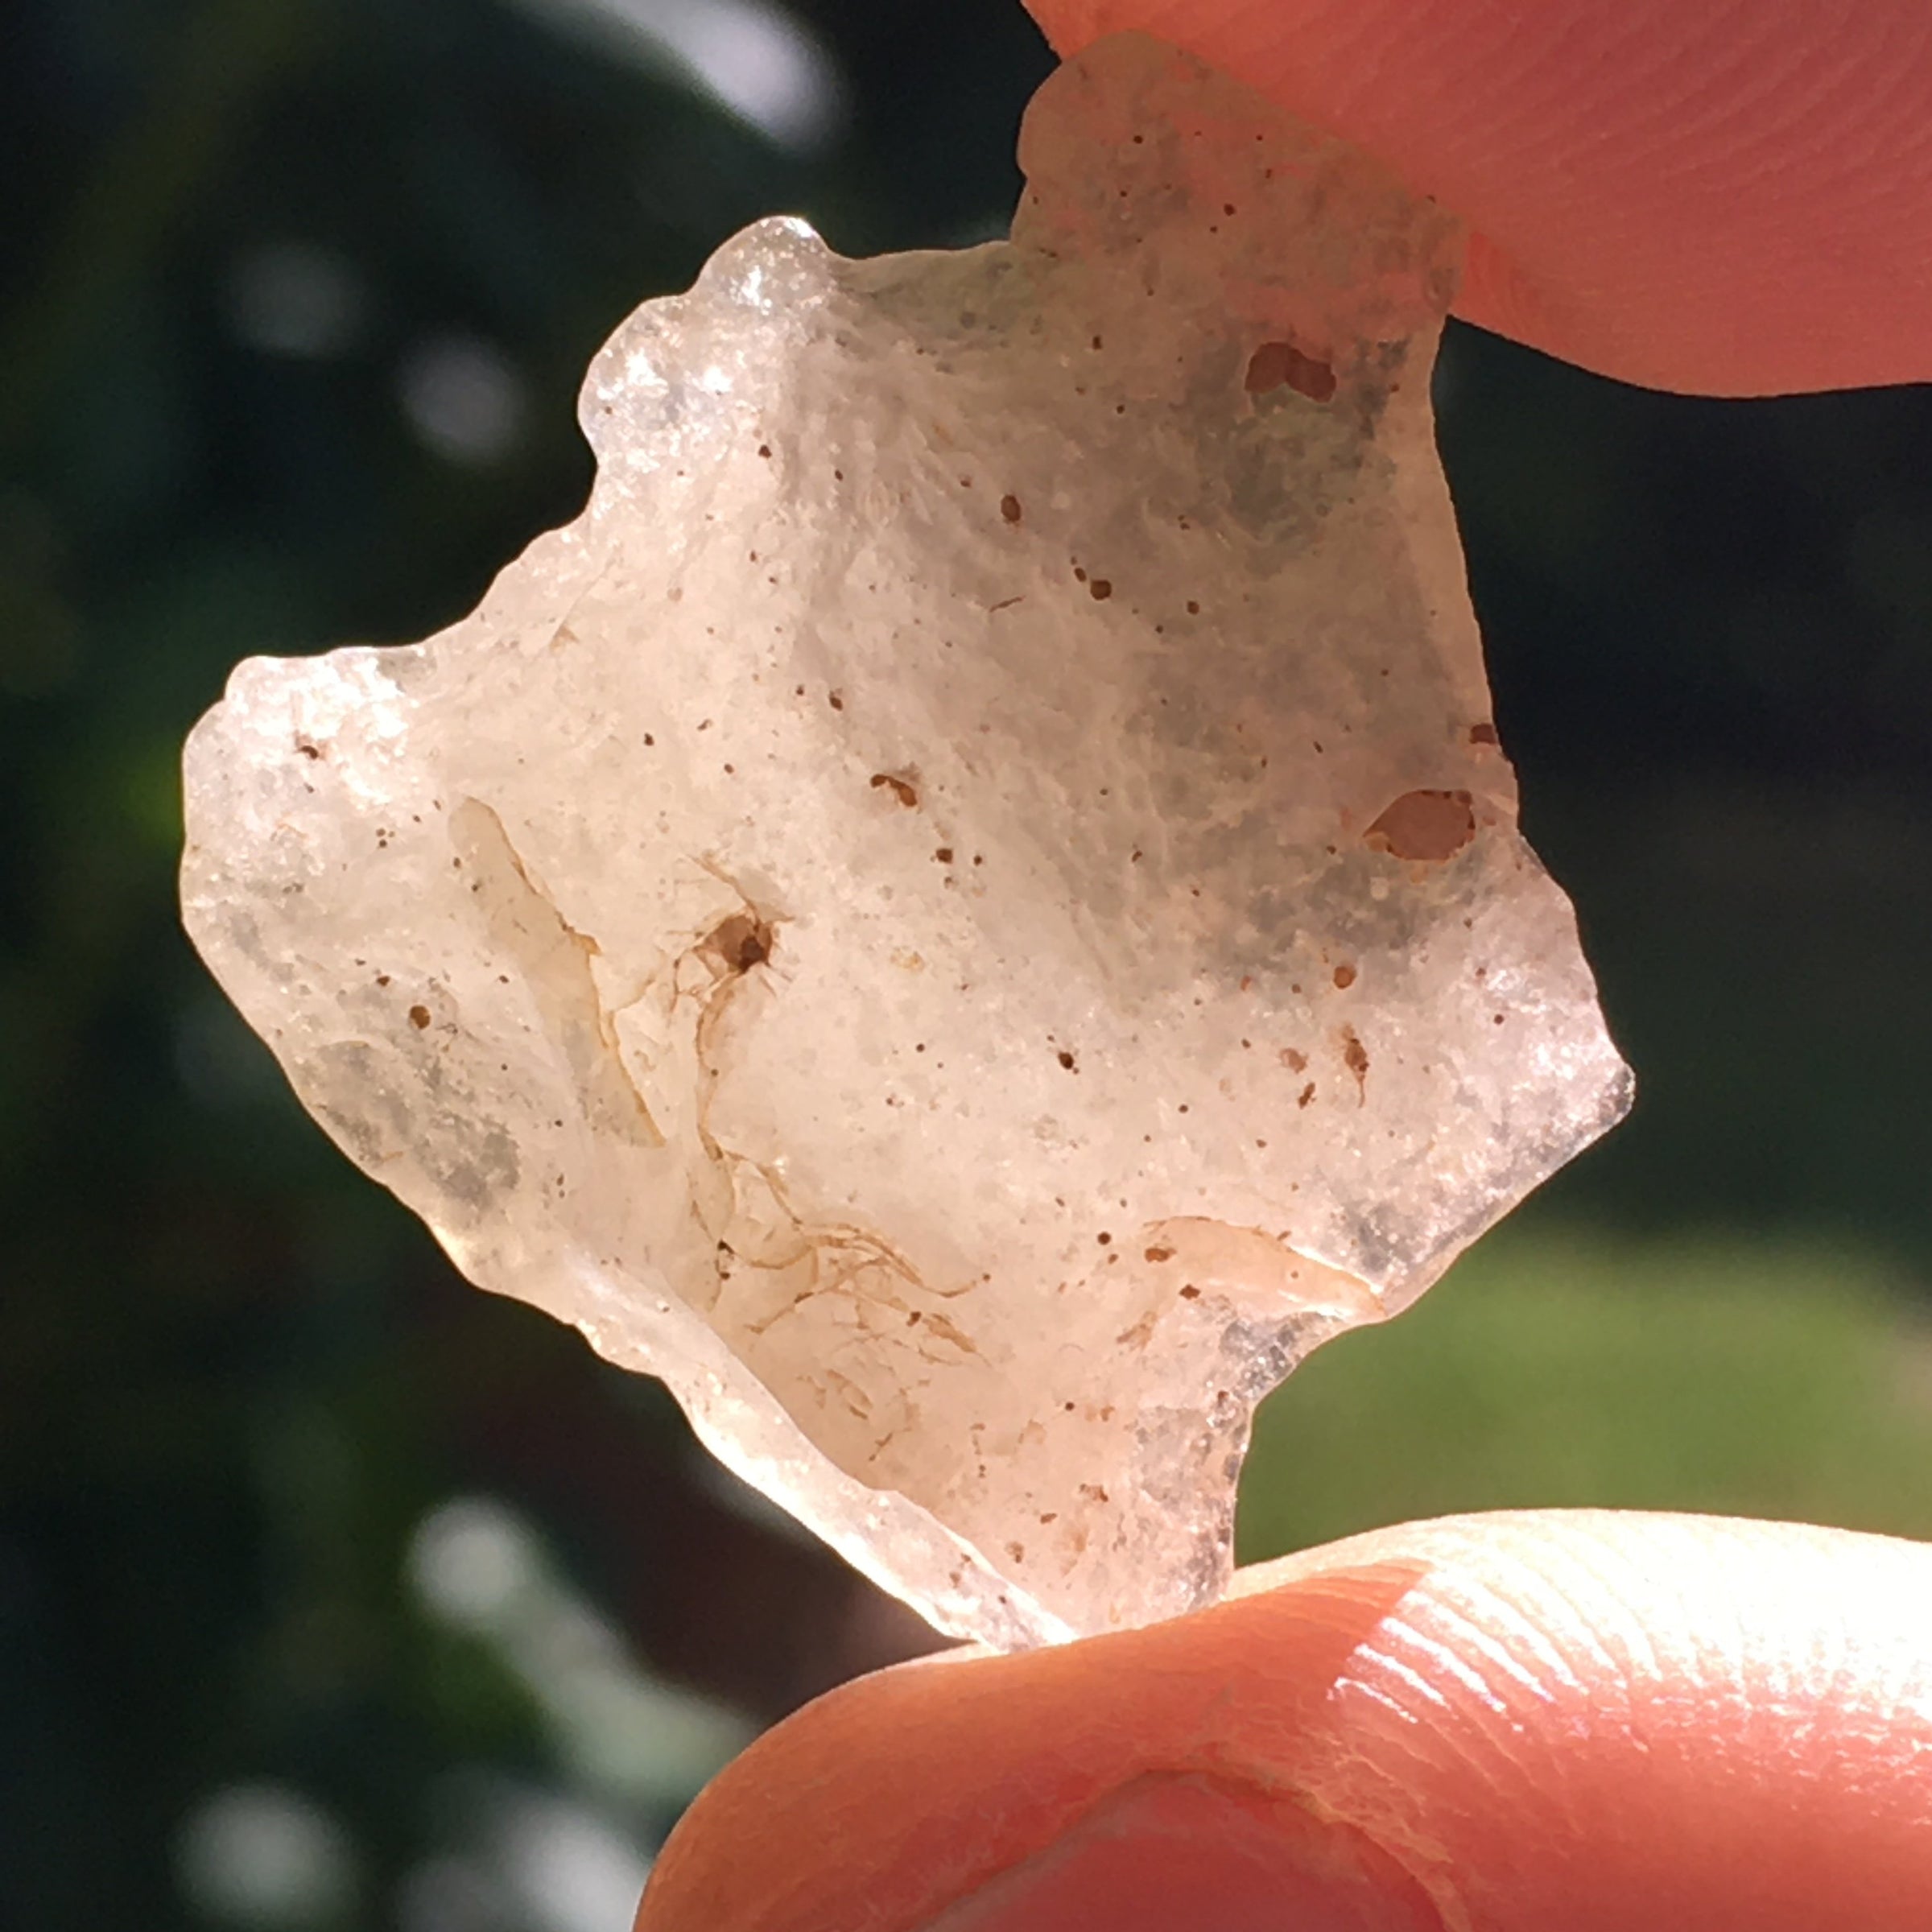 Libyan Desert Glass Tektite 3.3 grams-Moldavite Life